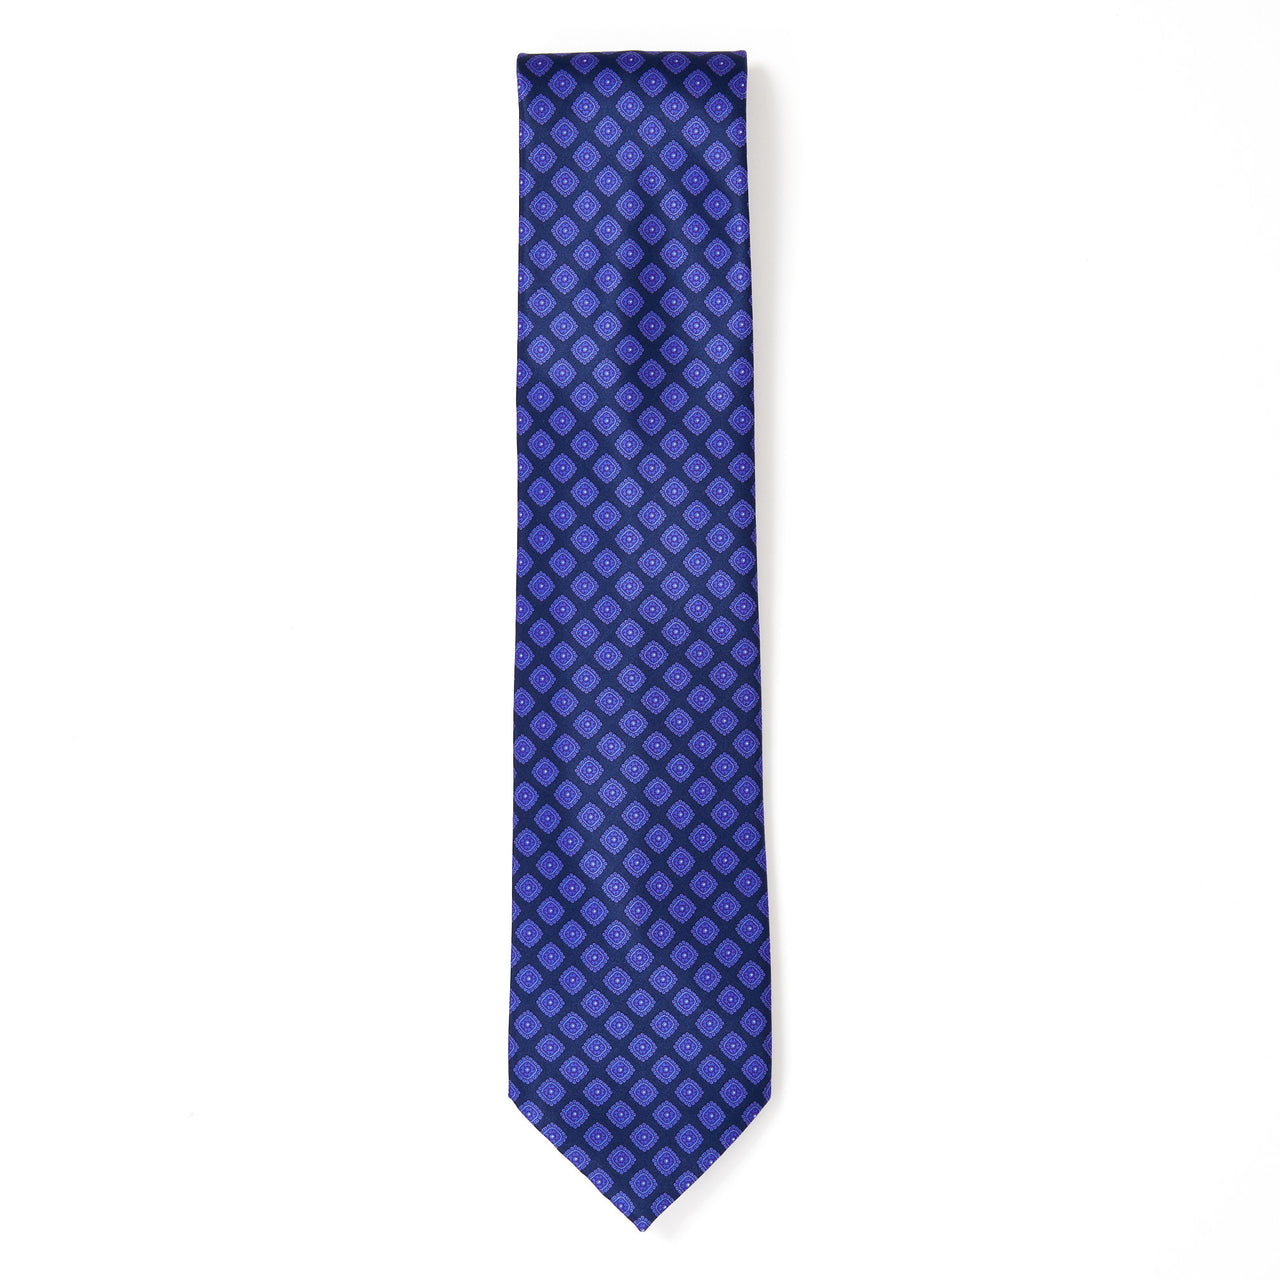 STEFANO RICCI Square Pattern Tie BLUE/PURPLE